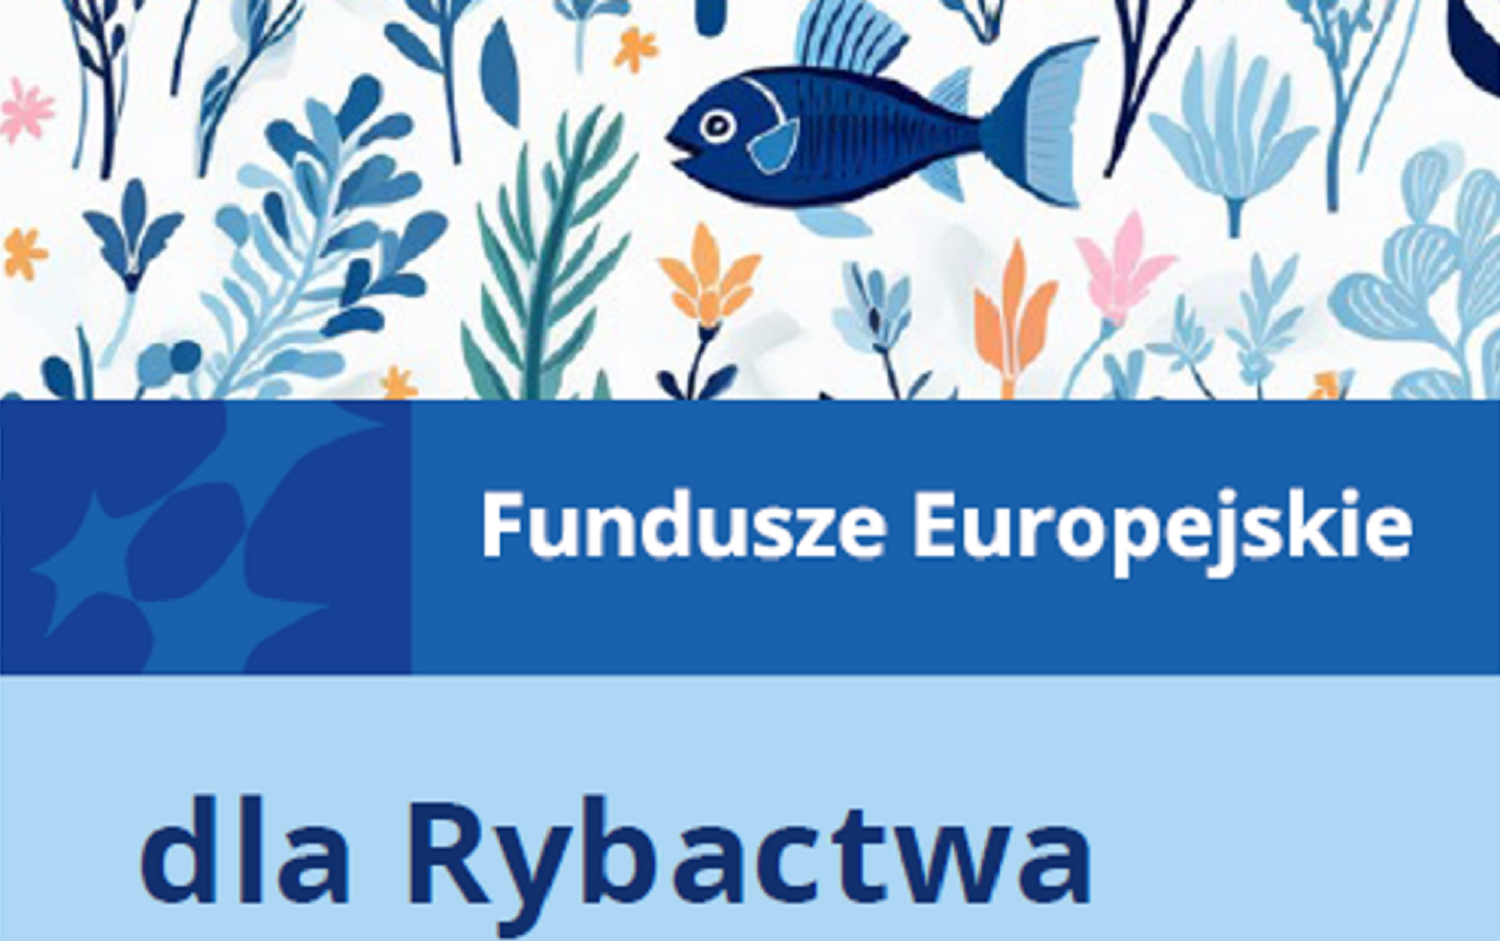 Fundusze Europejskie dla Rybactwa